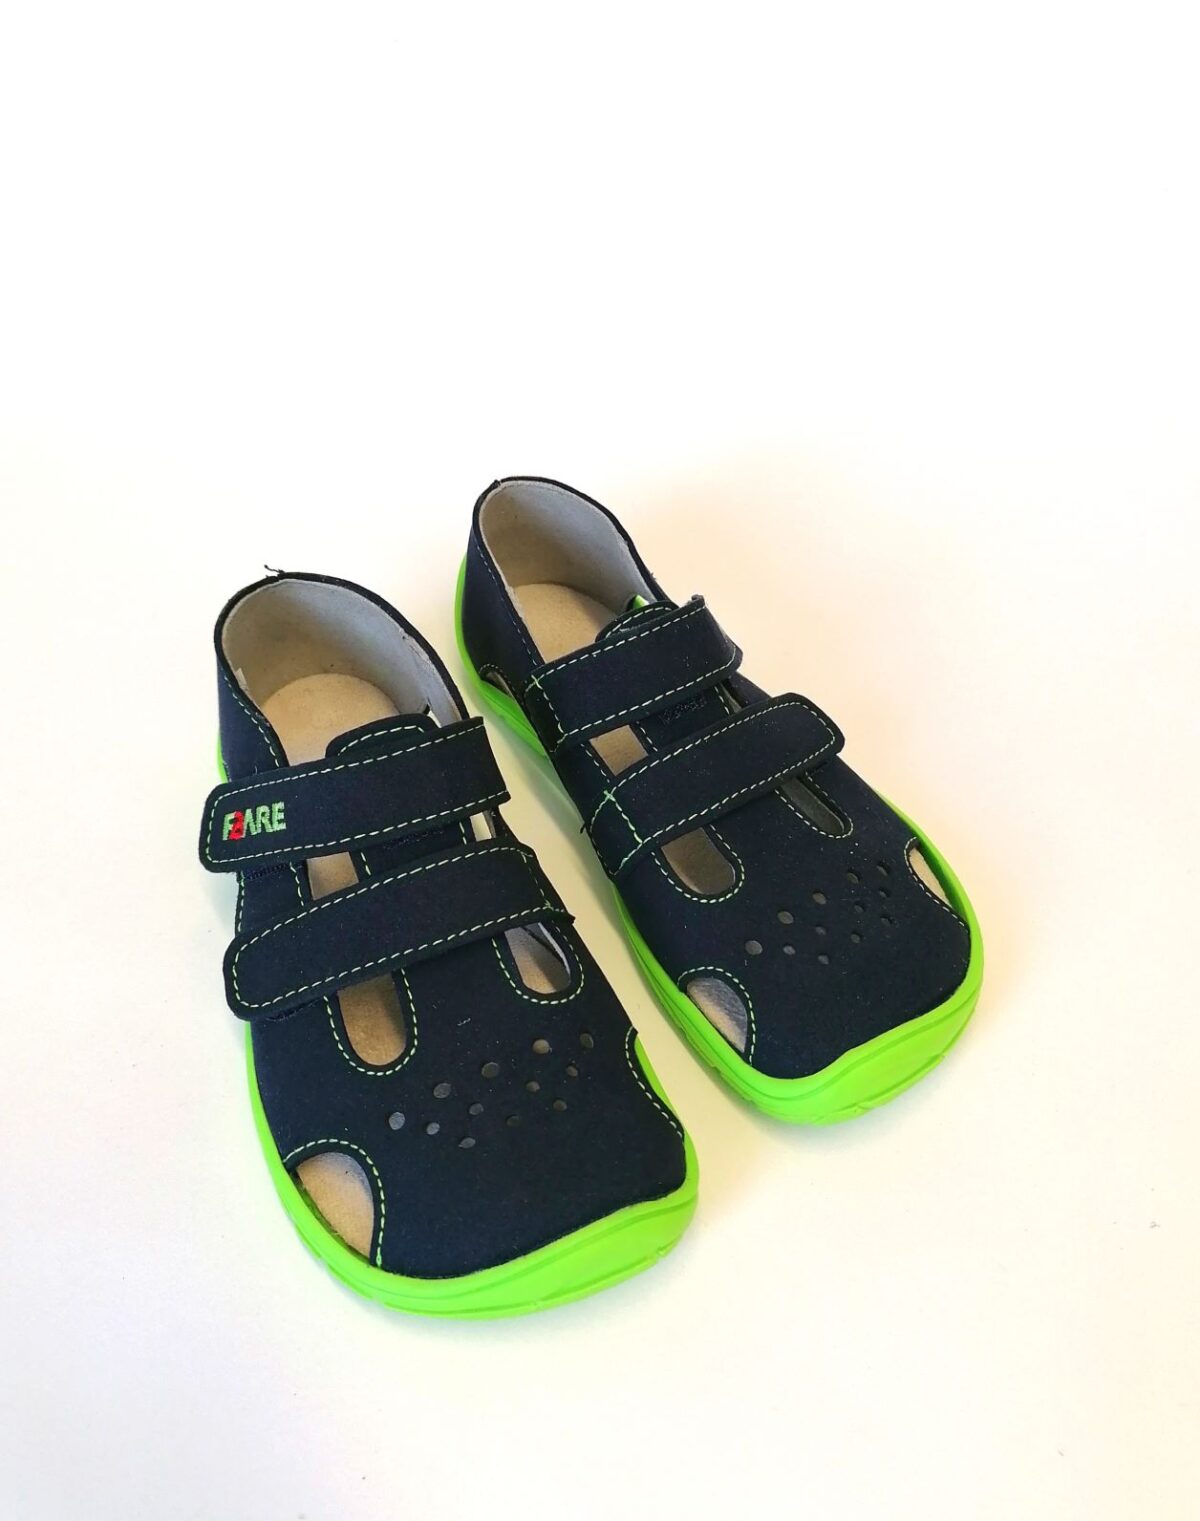 Fare Bare sandaalid, navy-roheline, 28-32 Laste barefoot jalatsid - HellyK - Kvaliteetsed lasteriided, villariided, barefoot jalatsid